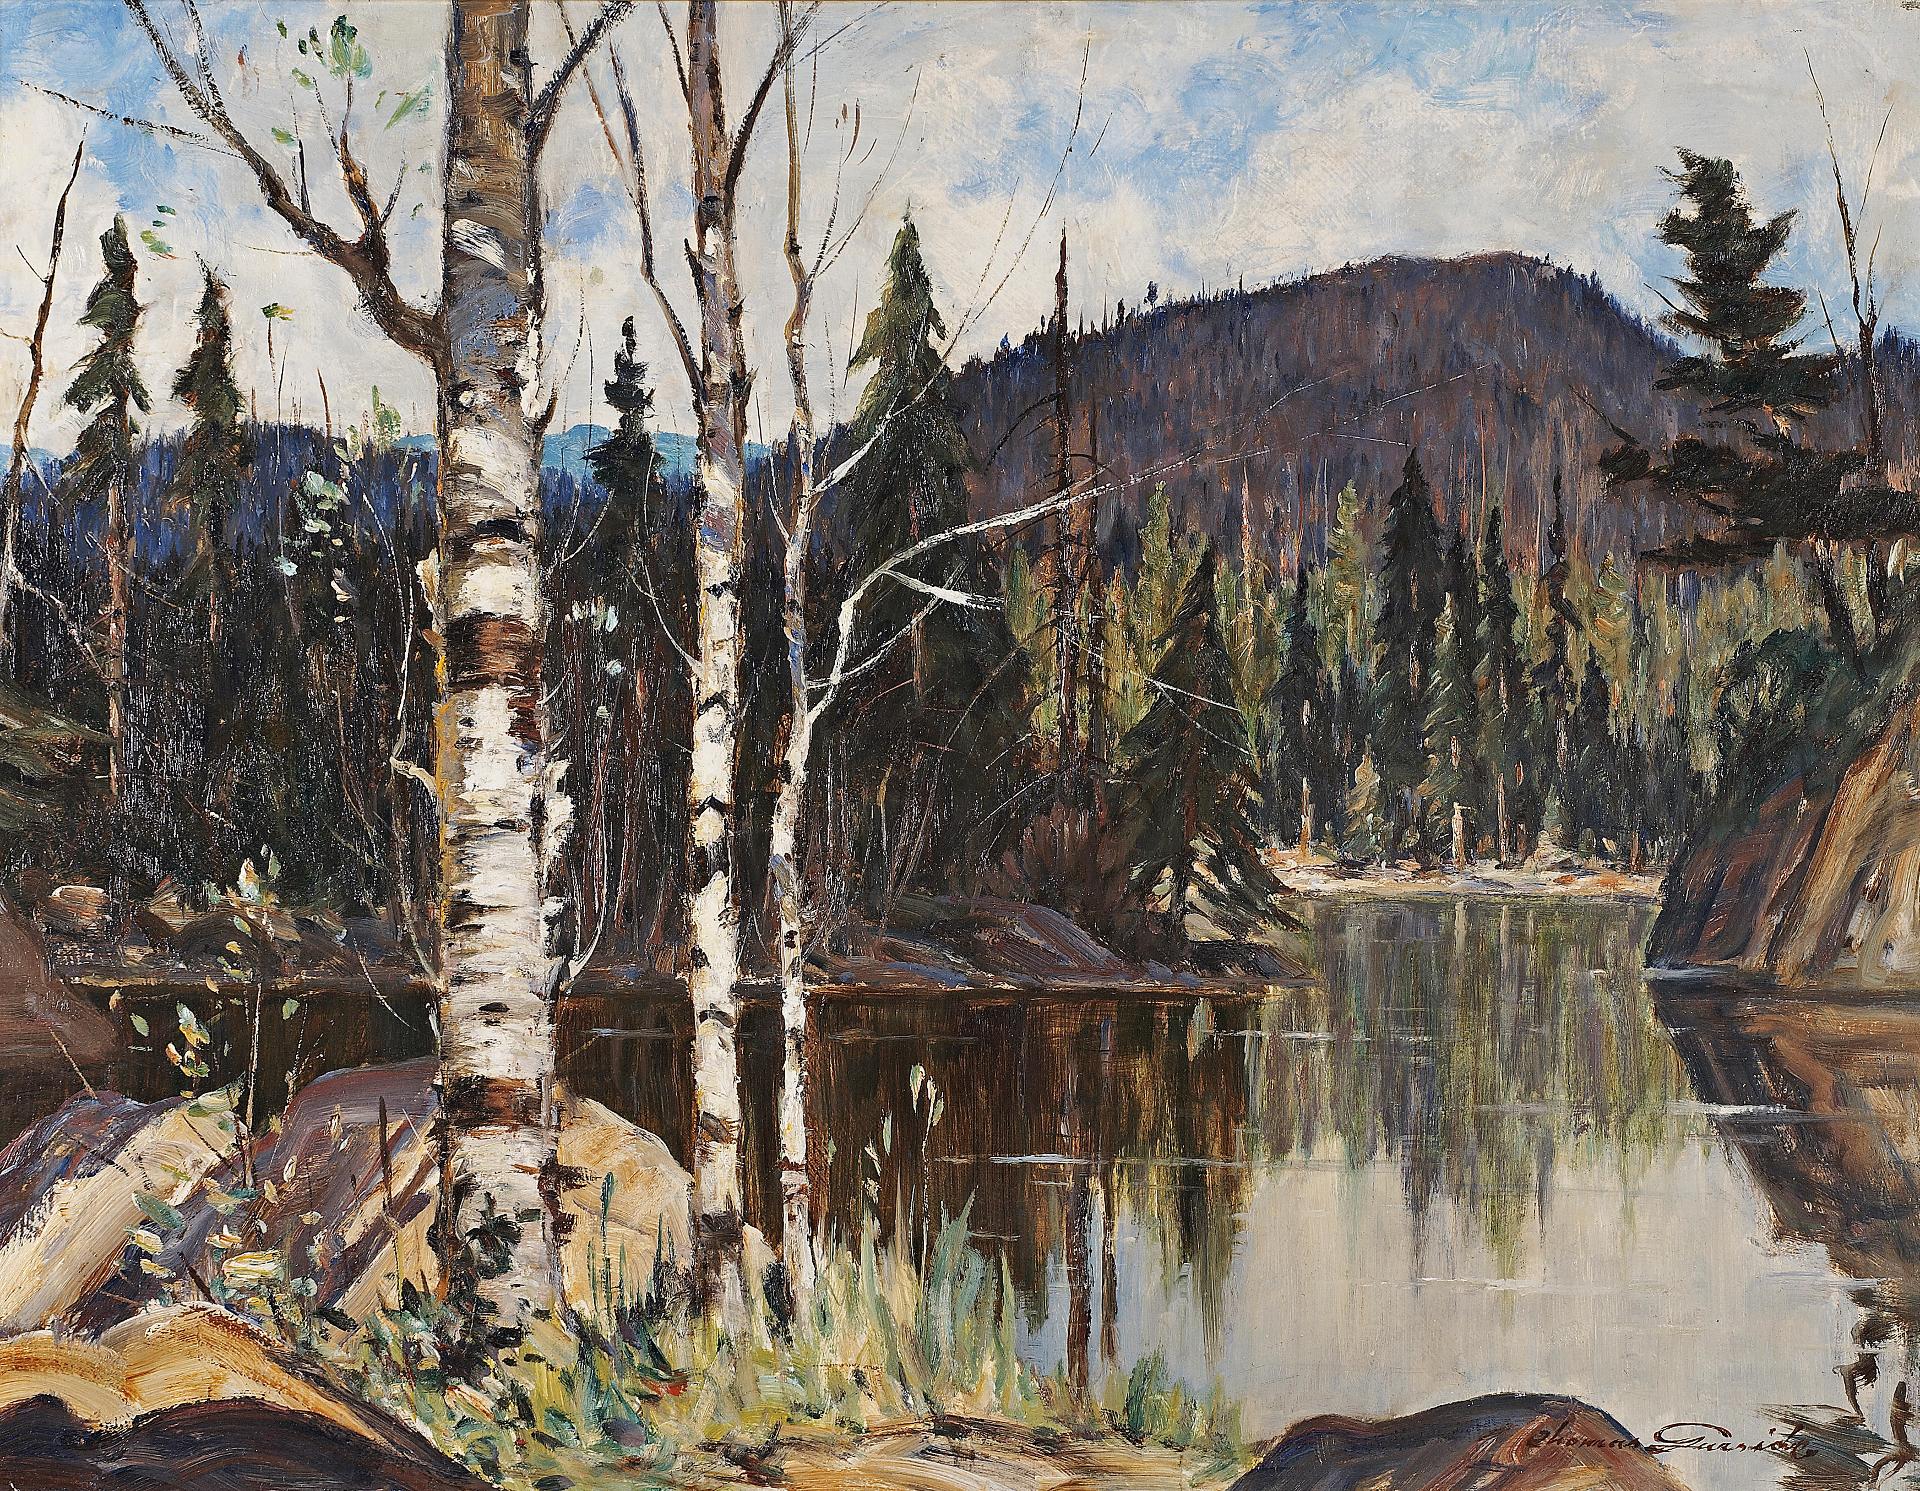 Thomas Hilton Garside (1906-1980) - River reflections, Laurentians, Quebec